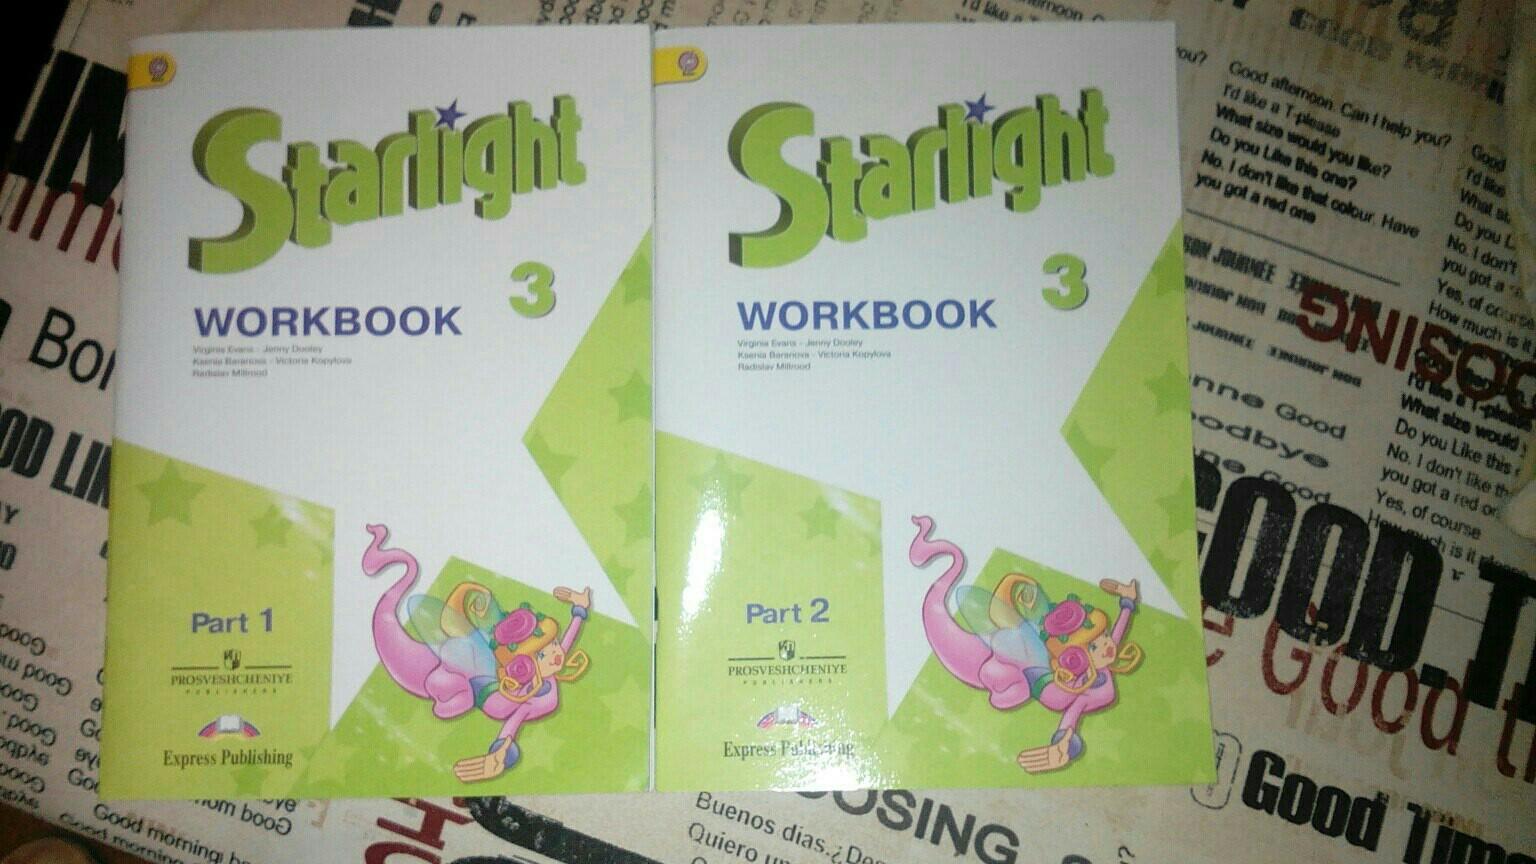 Английский 6 класс страница 54 номер 5. Starlight 4 Workbook Part 1. Spotlight 3 Workbook гдз. Рабочая тетрадь для закрепления английский 6 класса.